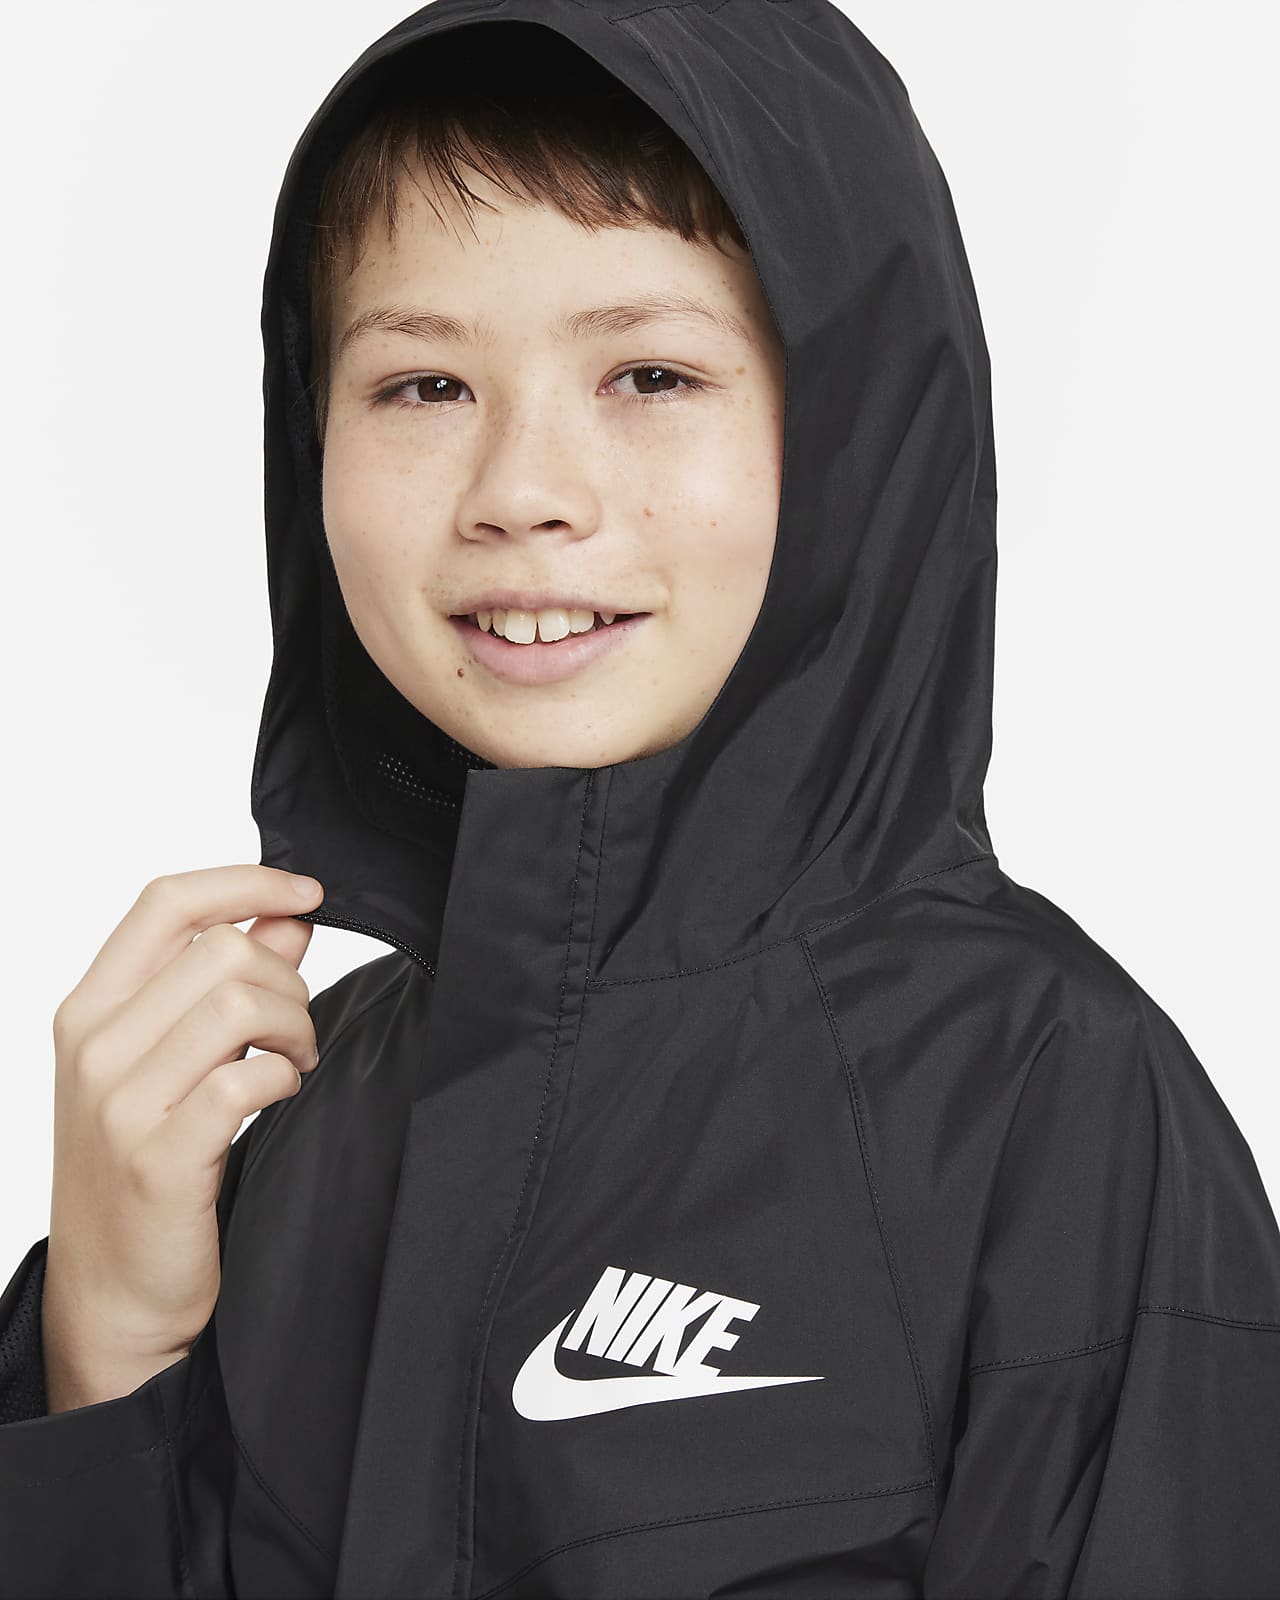 neutral sfære øretelefon Nike Sportswear Storm-FIT Windrunner-jakke til større børn (drenge). Nike DK